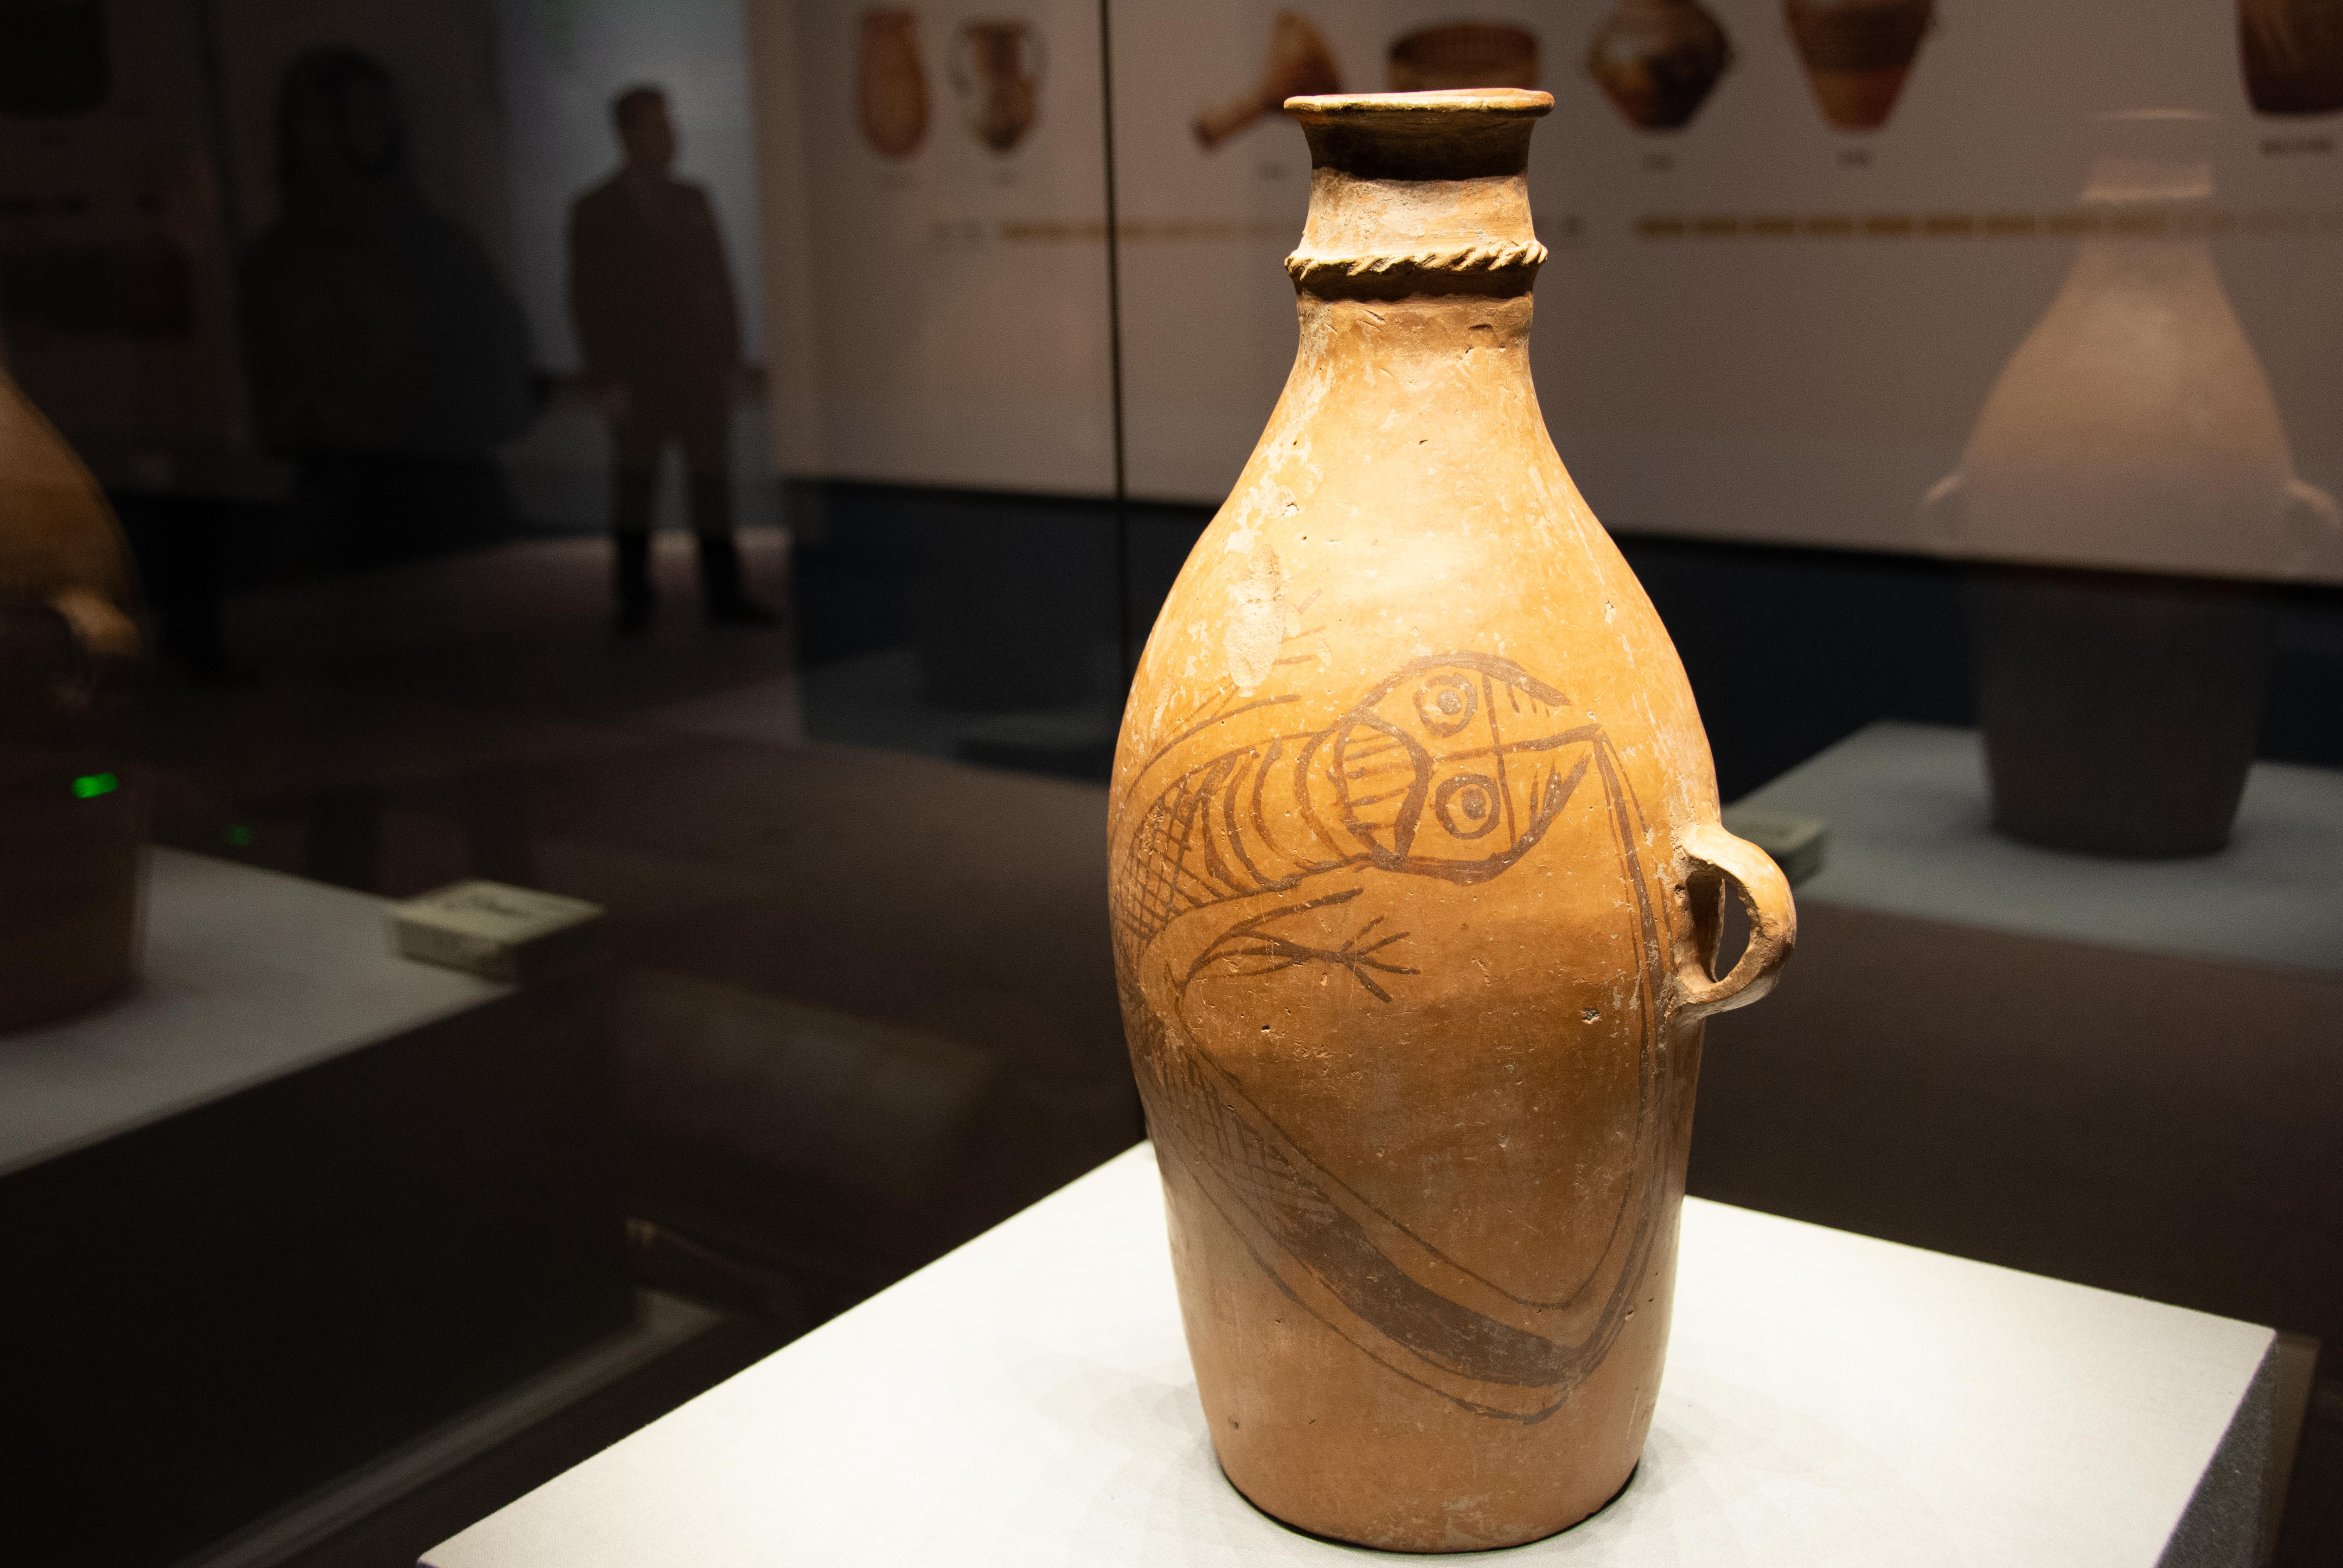 多省文物汇集长沙展示数千年中华文明